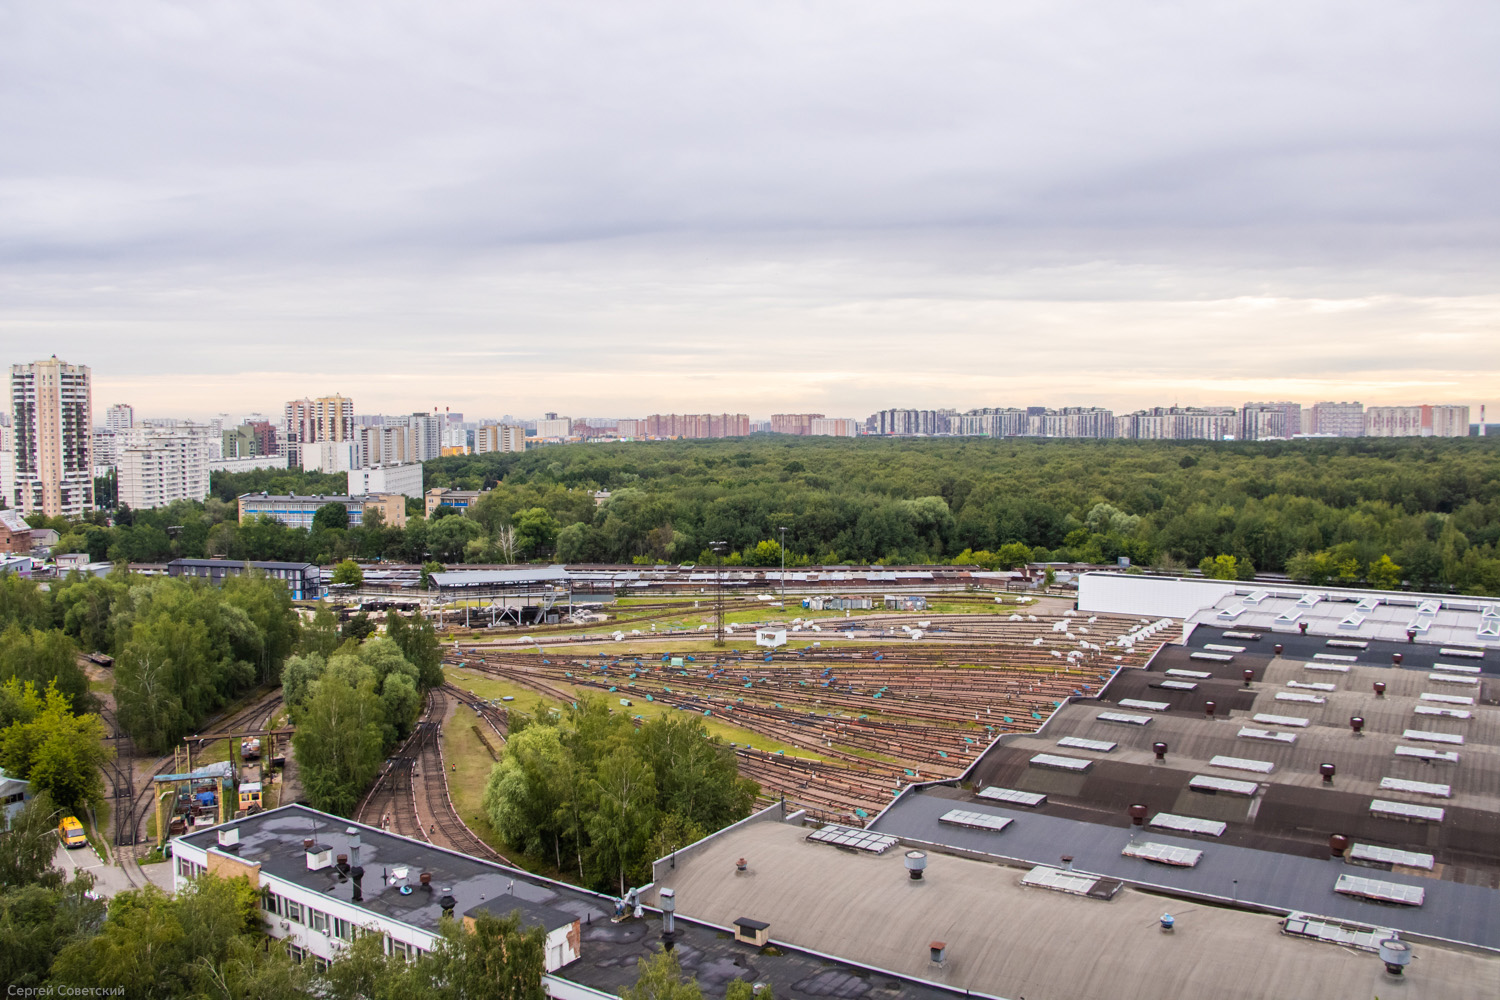 Moscova — Metro — [7] Tagansko-Krasnopresnenskaya Line; Moscova — Views from a height